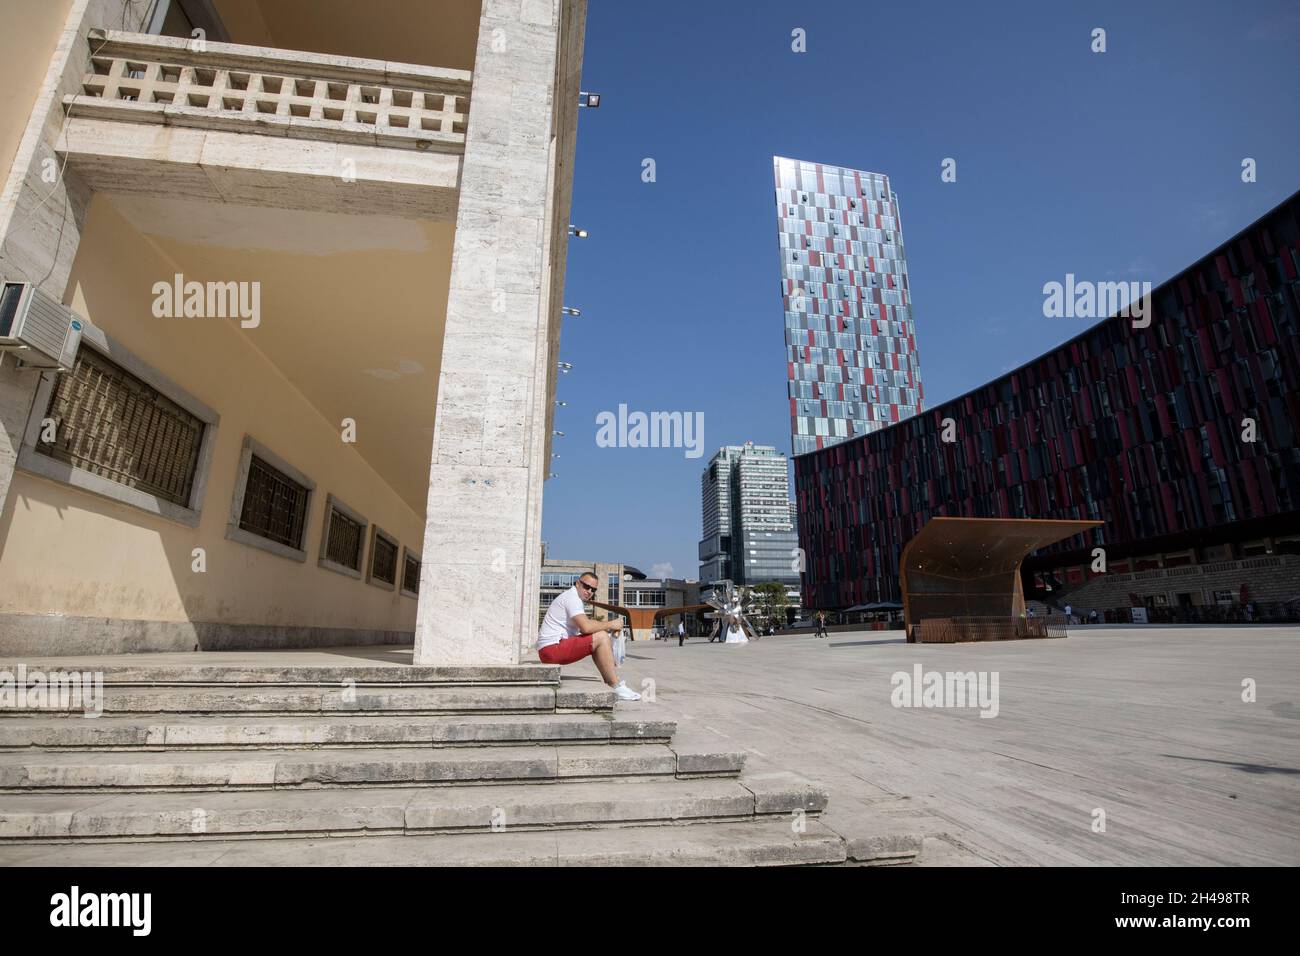 La vita quotidiana a Tirana, la capitale dell'Albania, conosciuta per la sua colorata architettura ottomana-fascista e sovietica, i Balcani, l'Europa sudorientale. Foto Stock